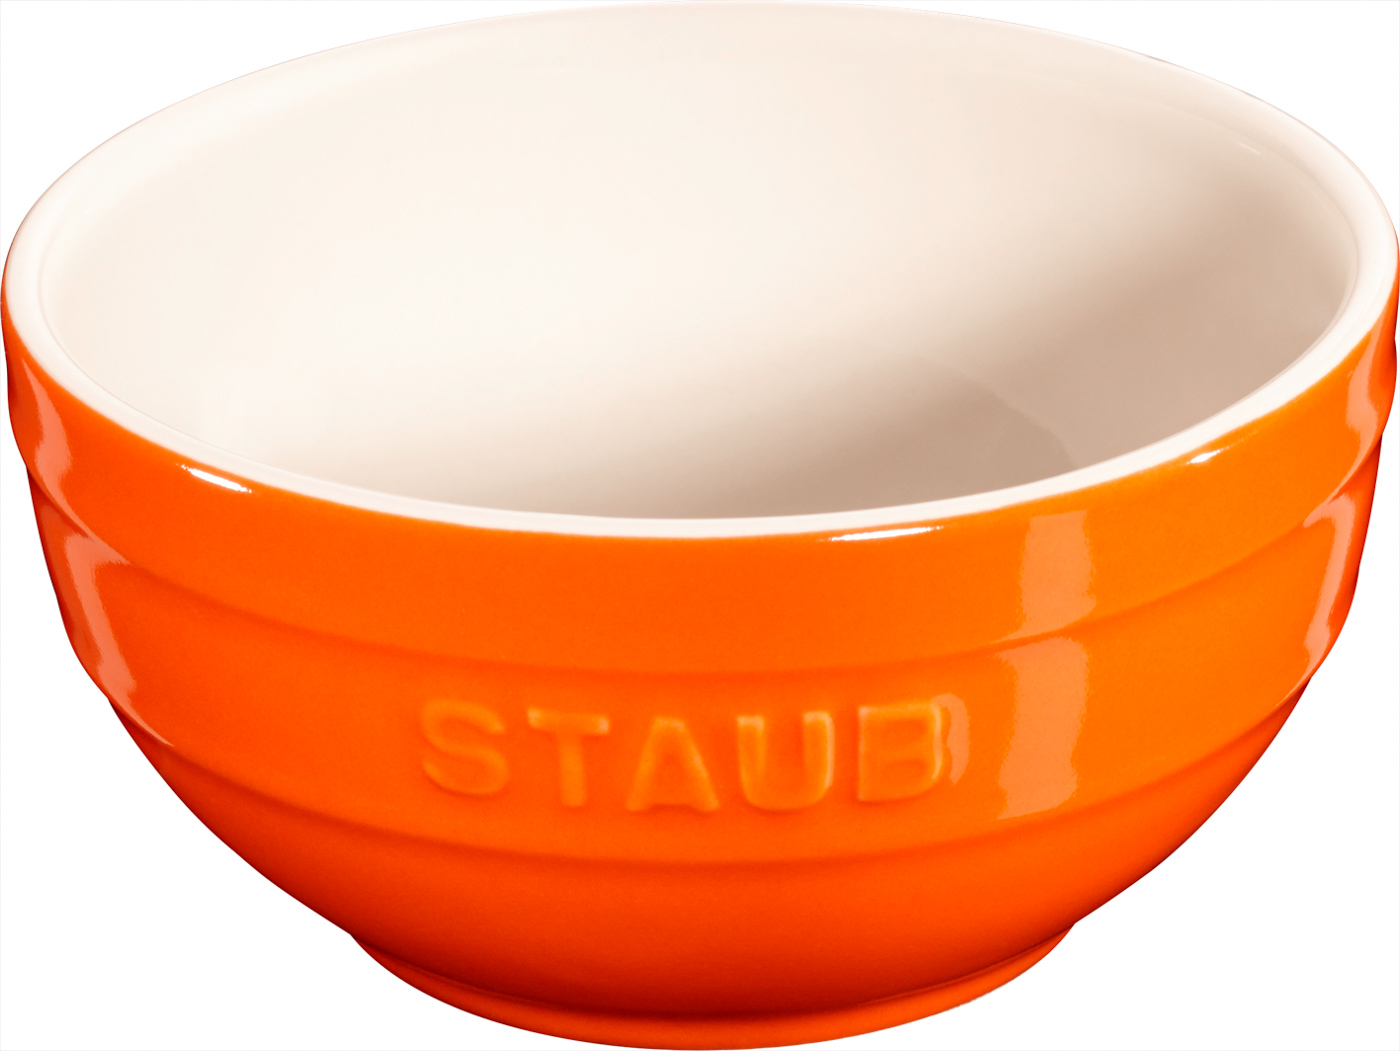 Schüssel, 12 cm, Orange, Keramik, Serie: Ceramique. Marke: Staub